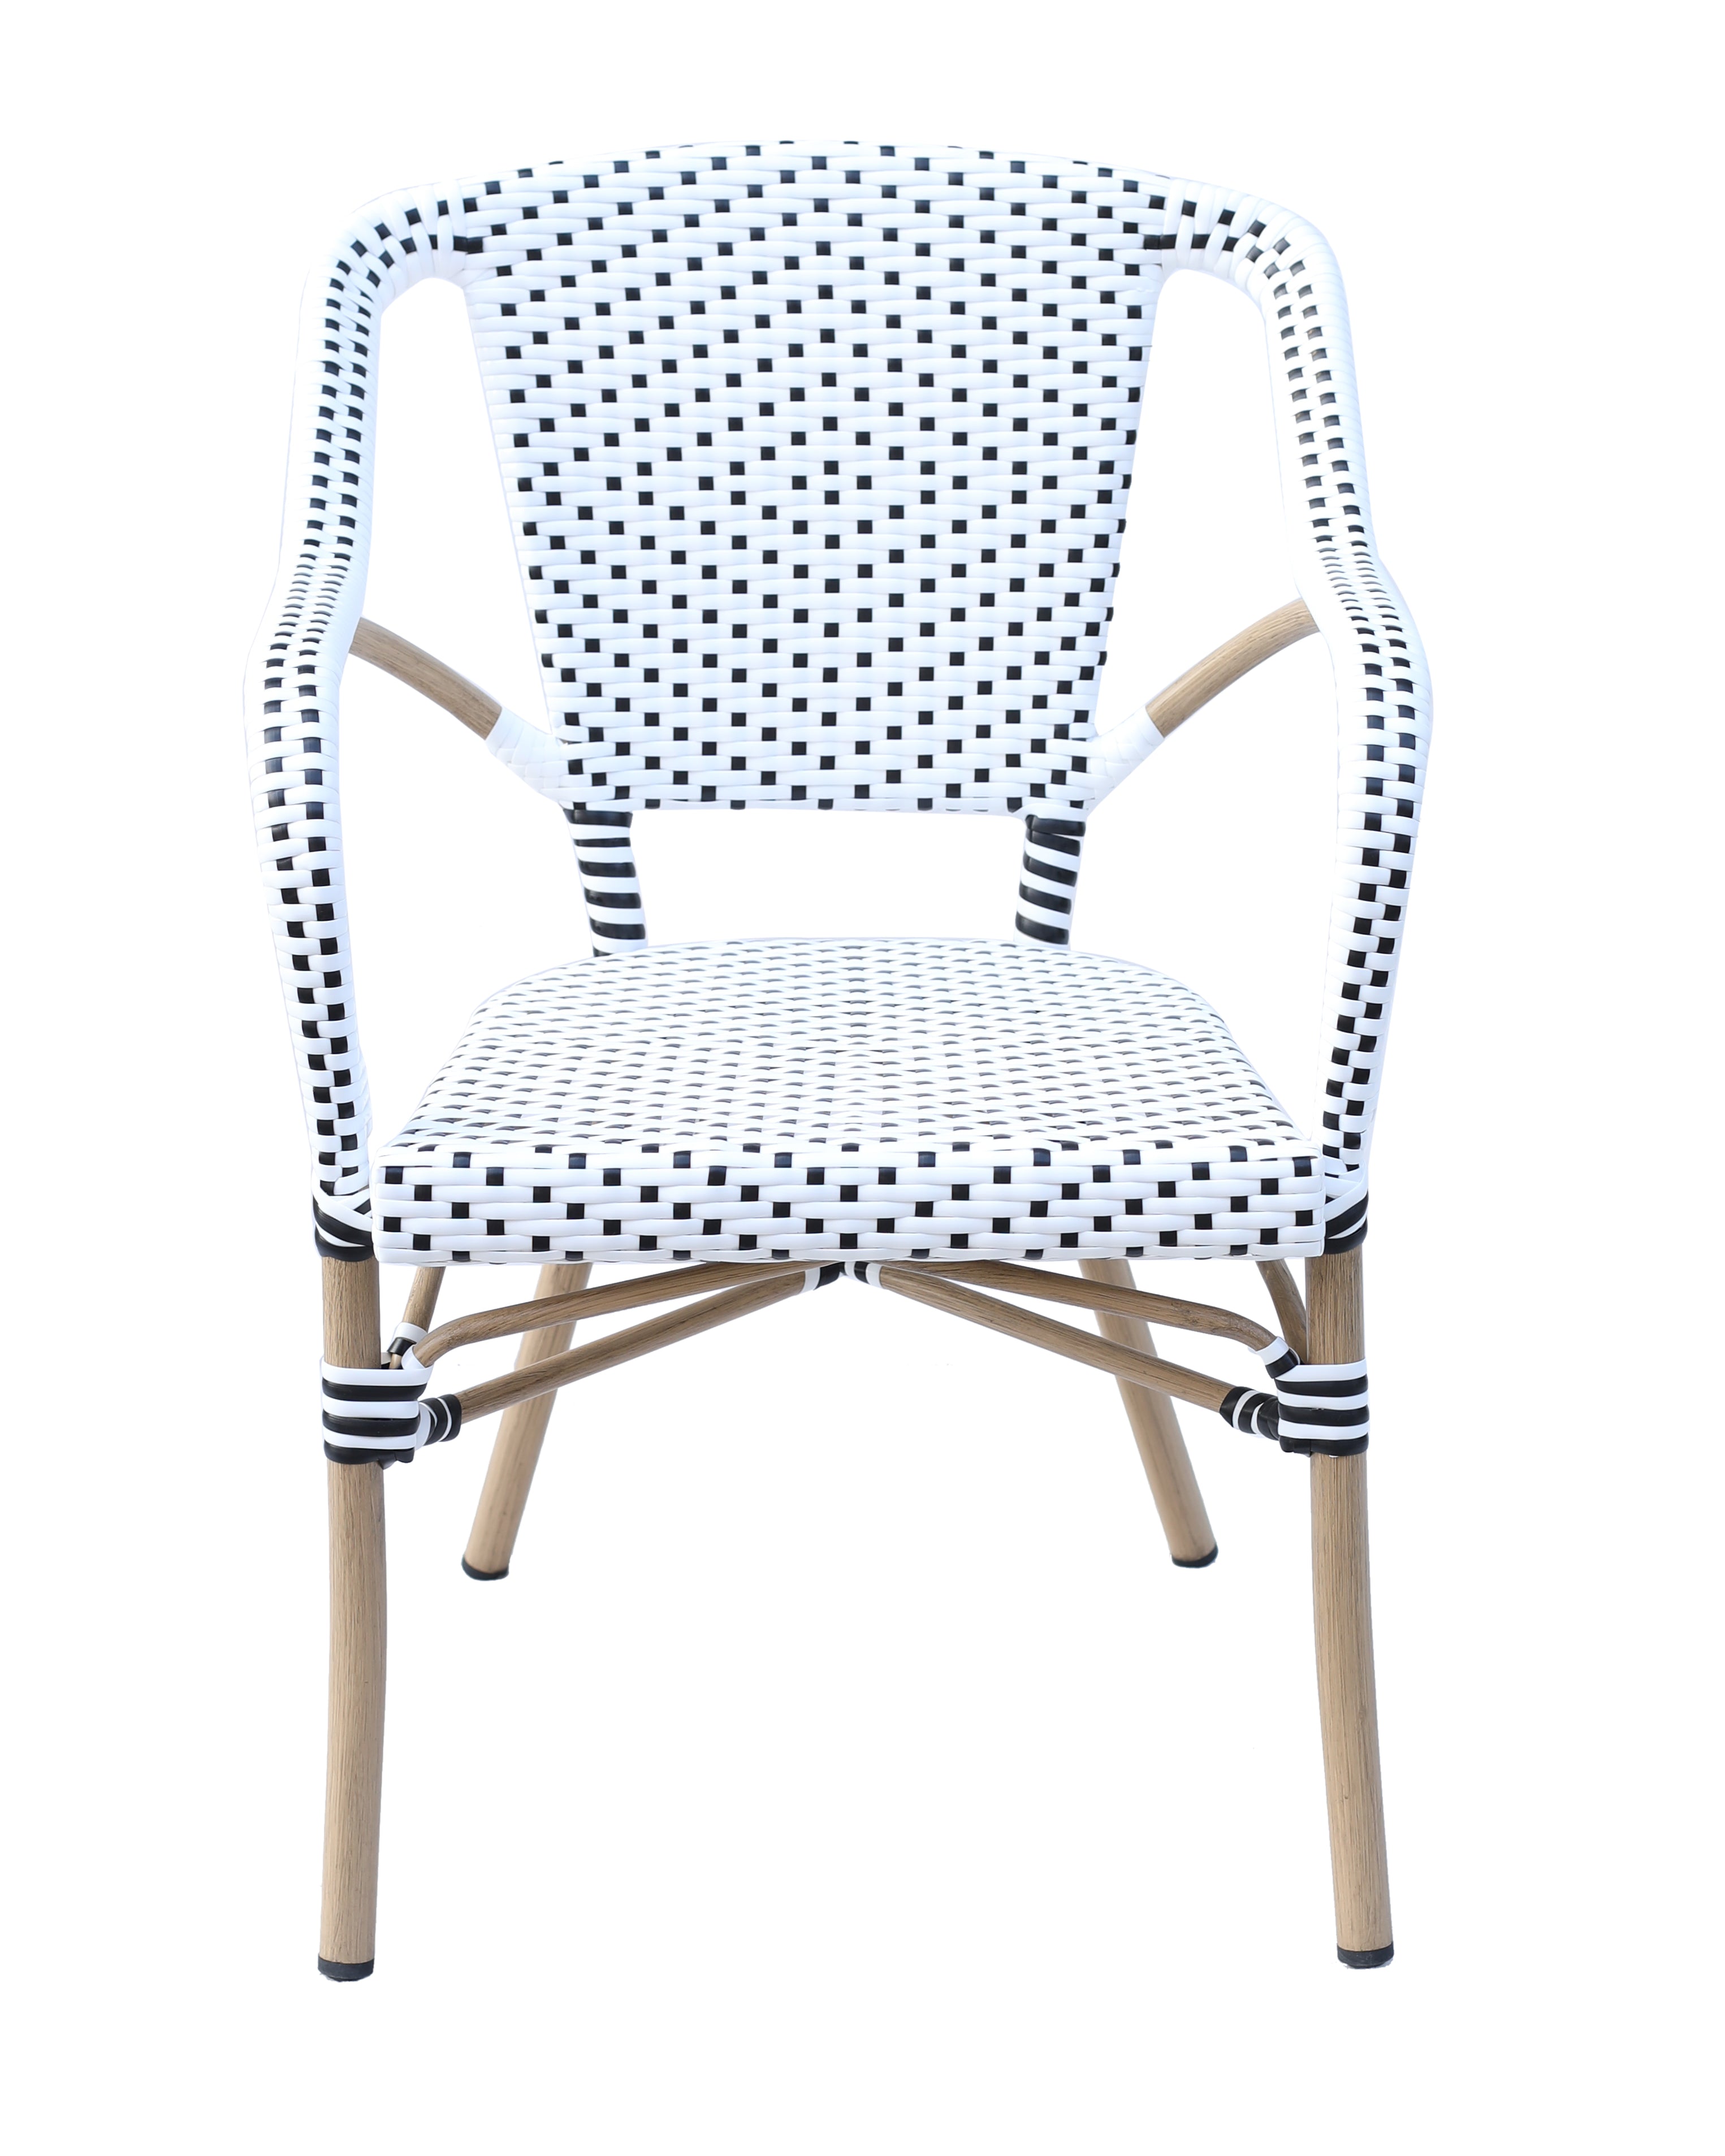 5 telas perfectas para tapizar sillas, ¡renueva tu mobiliario! - Blog  SillaOficina365.